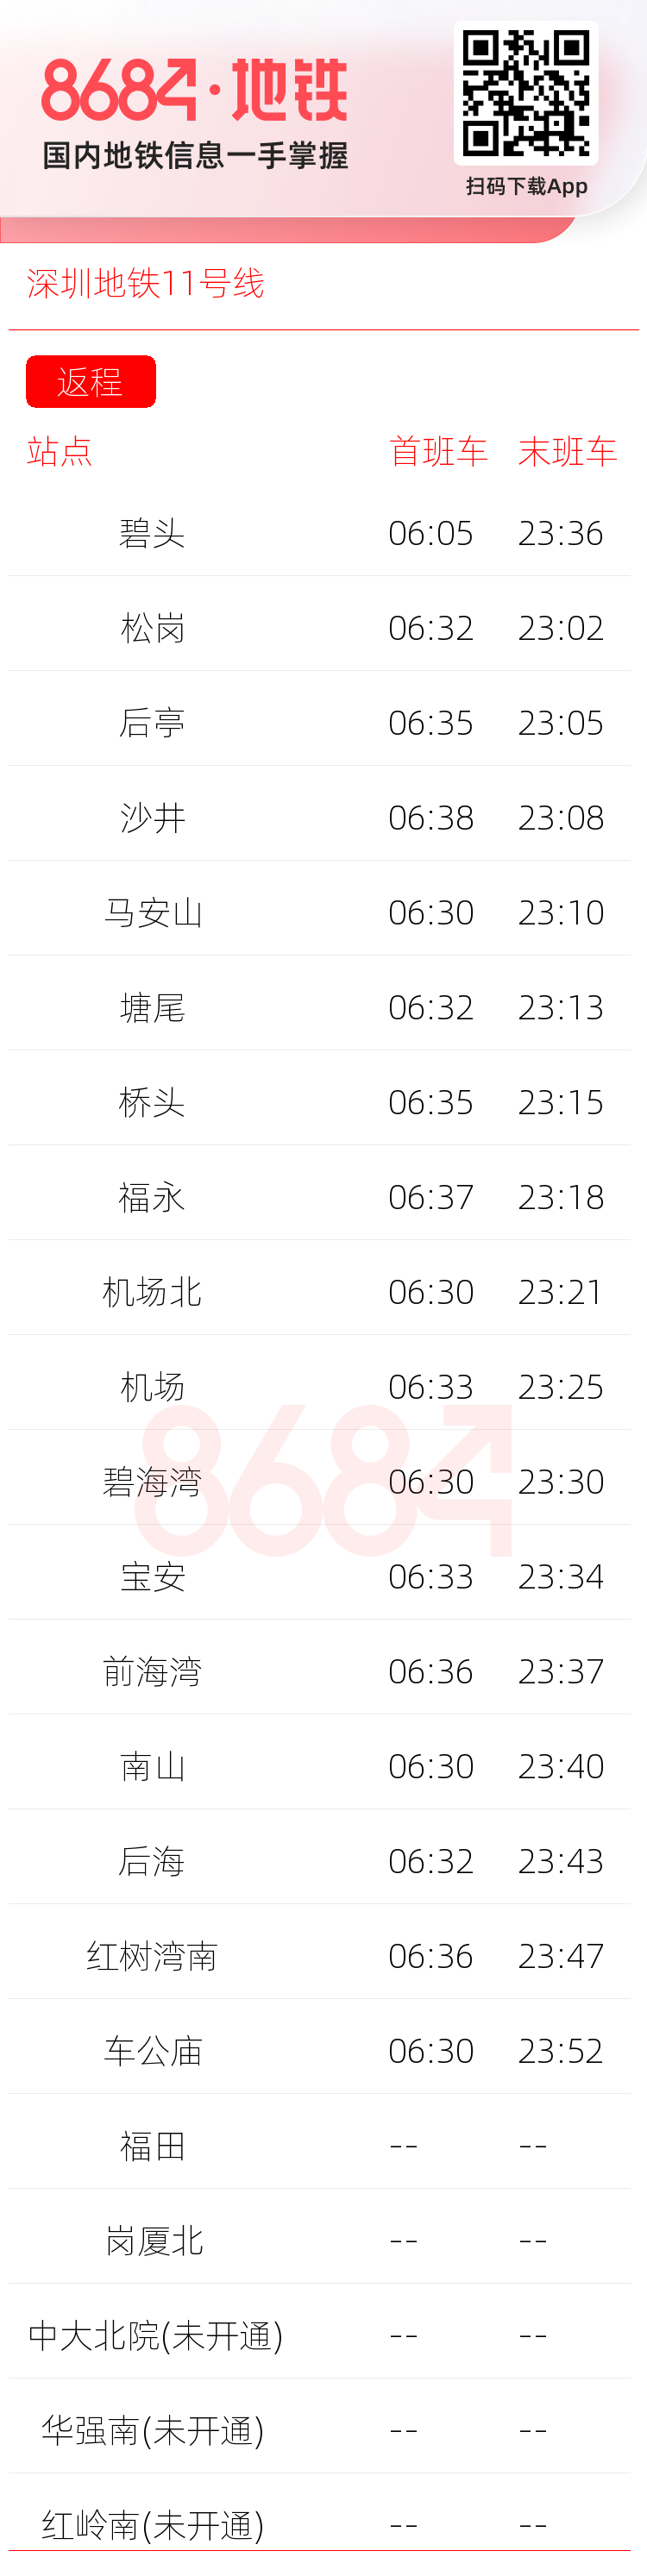 深圳地铁11号线运营时间表